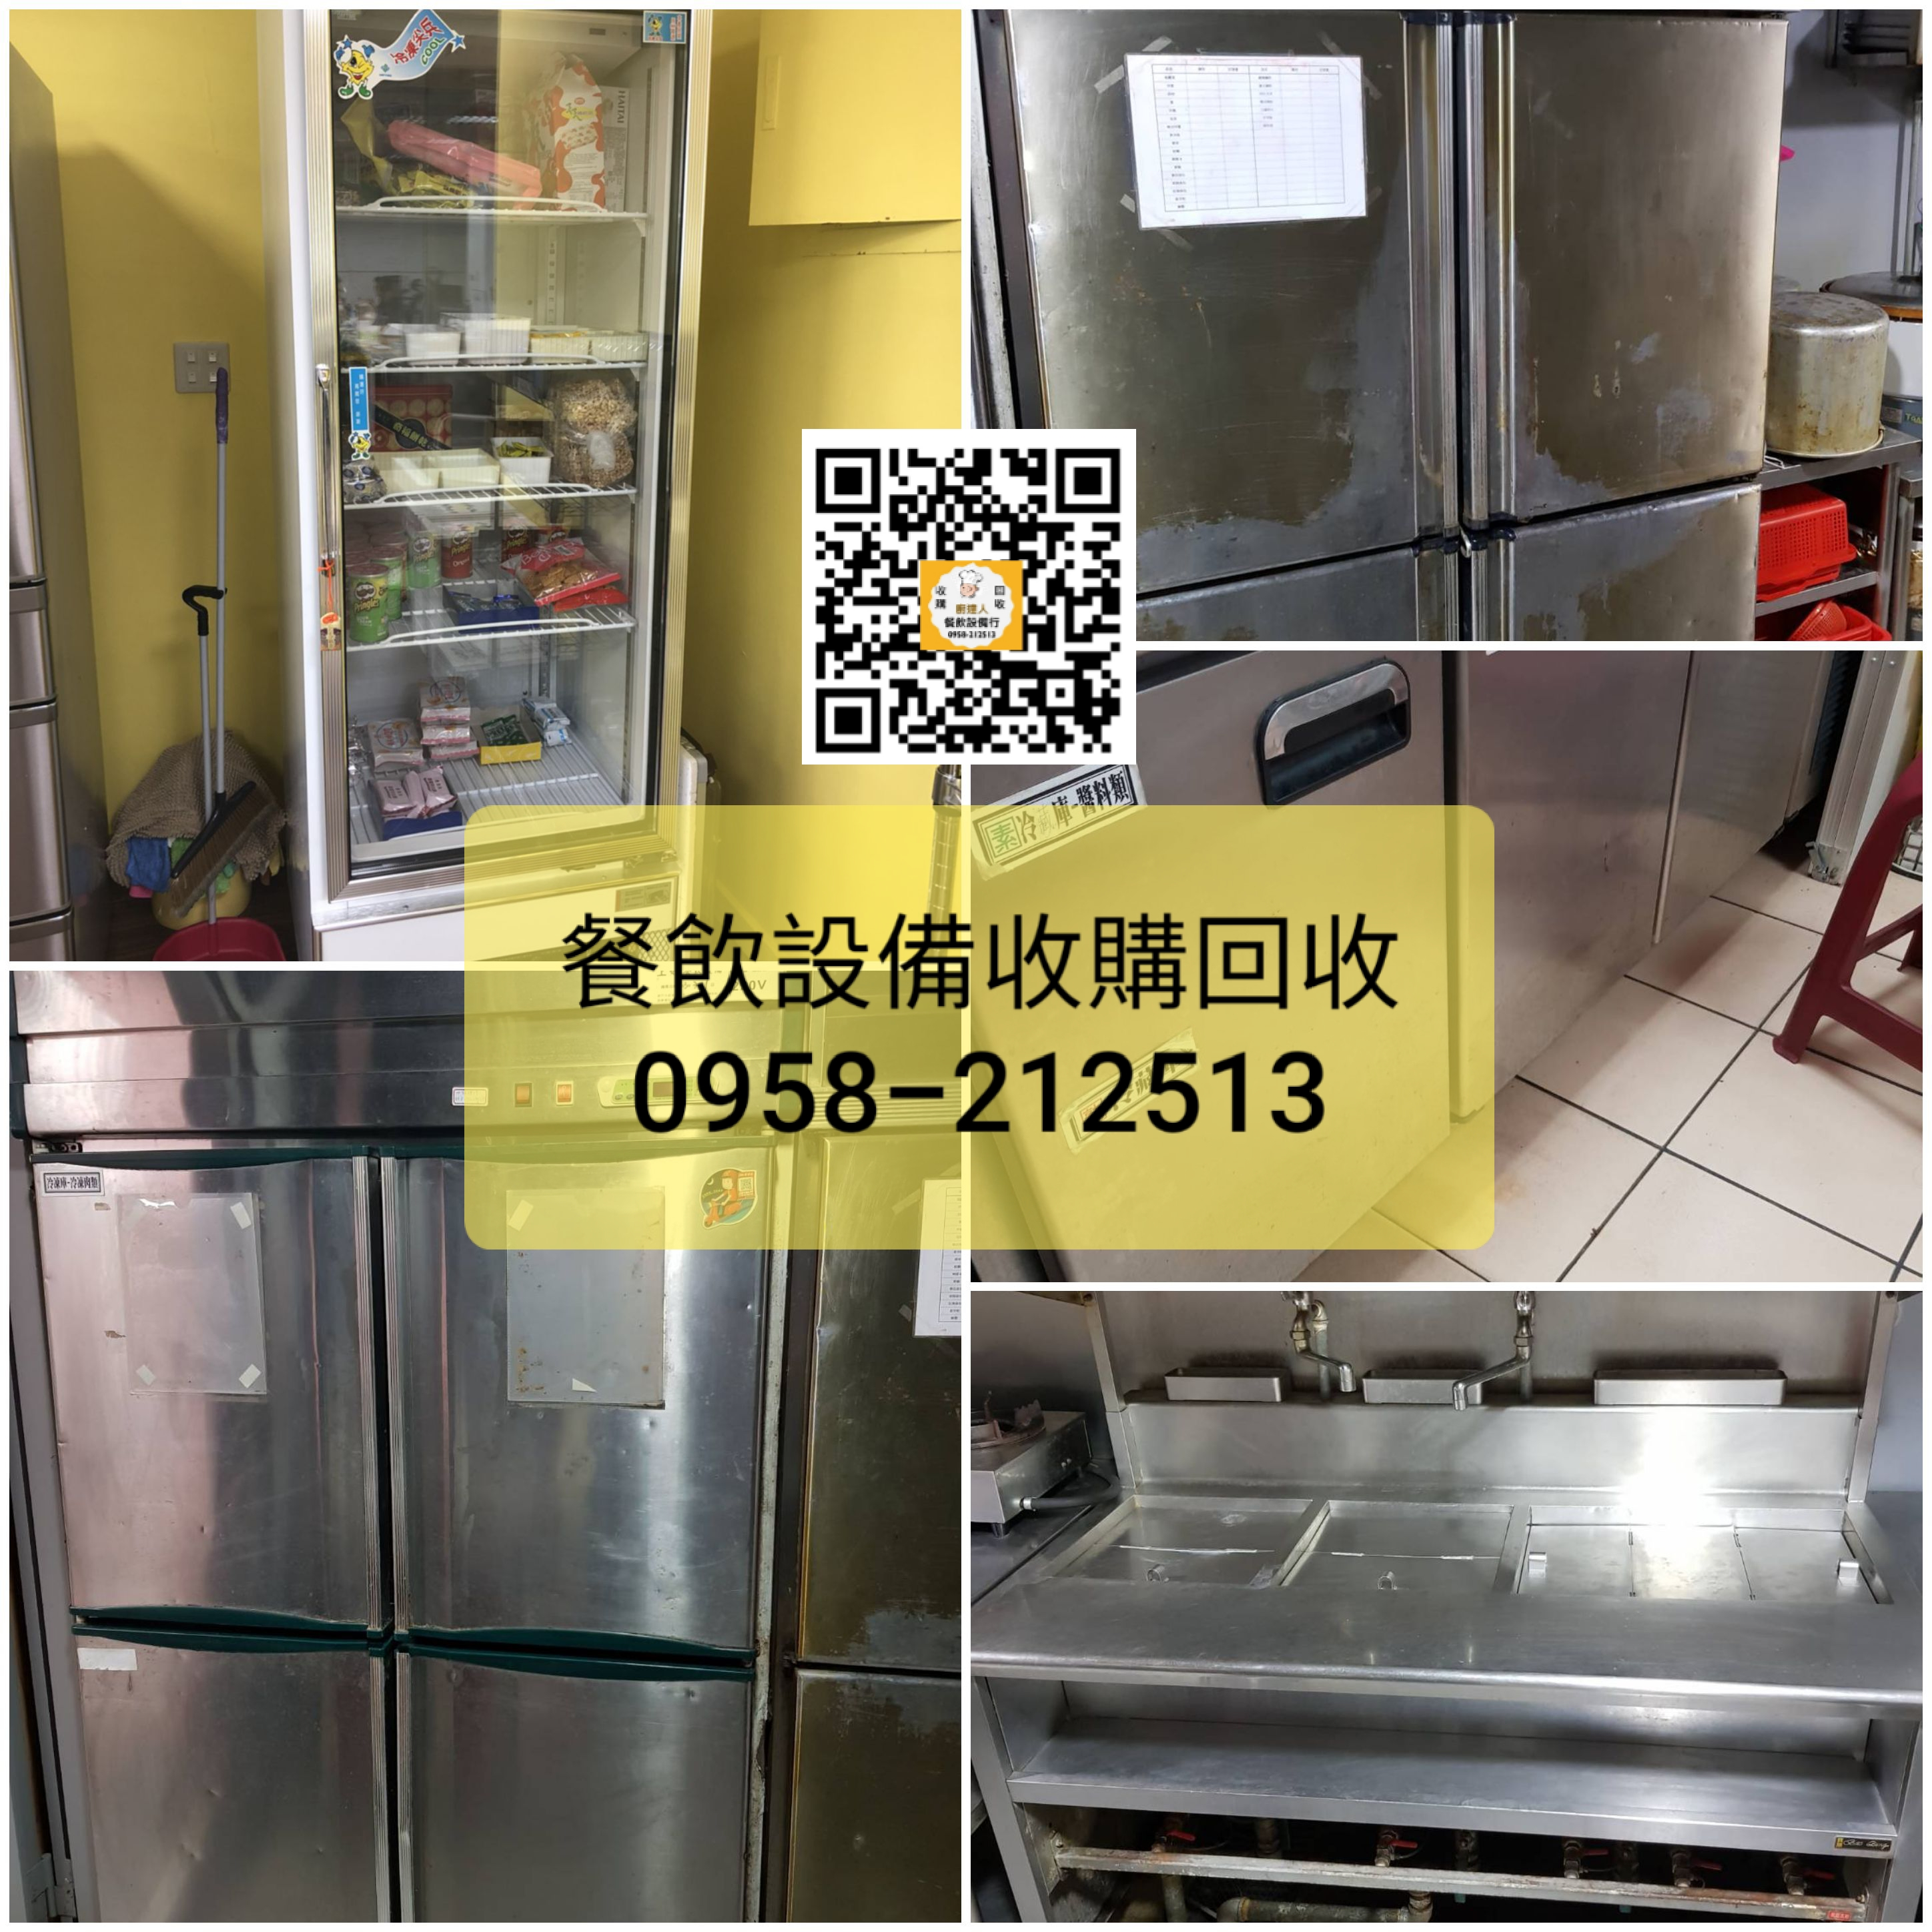 台北新北中古二手餐飲設備回收-收購-到府估價